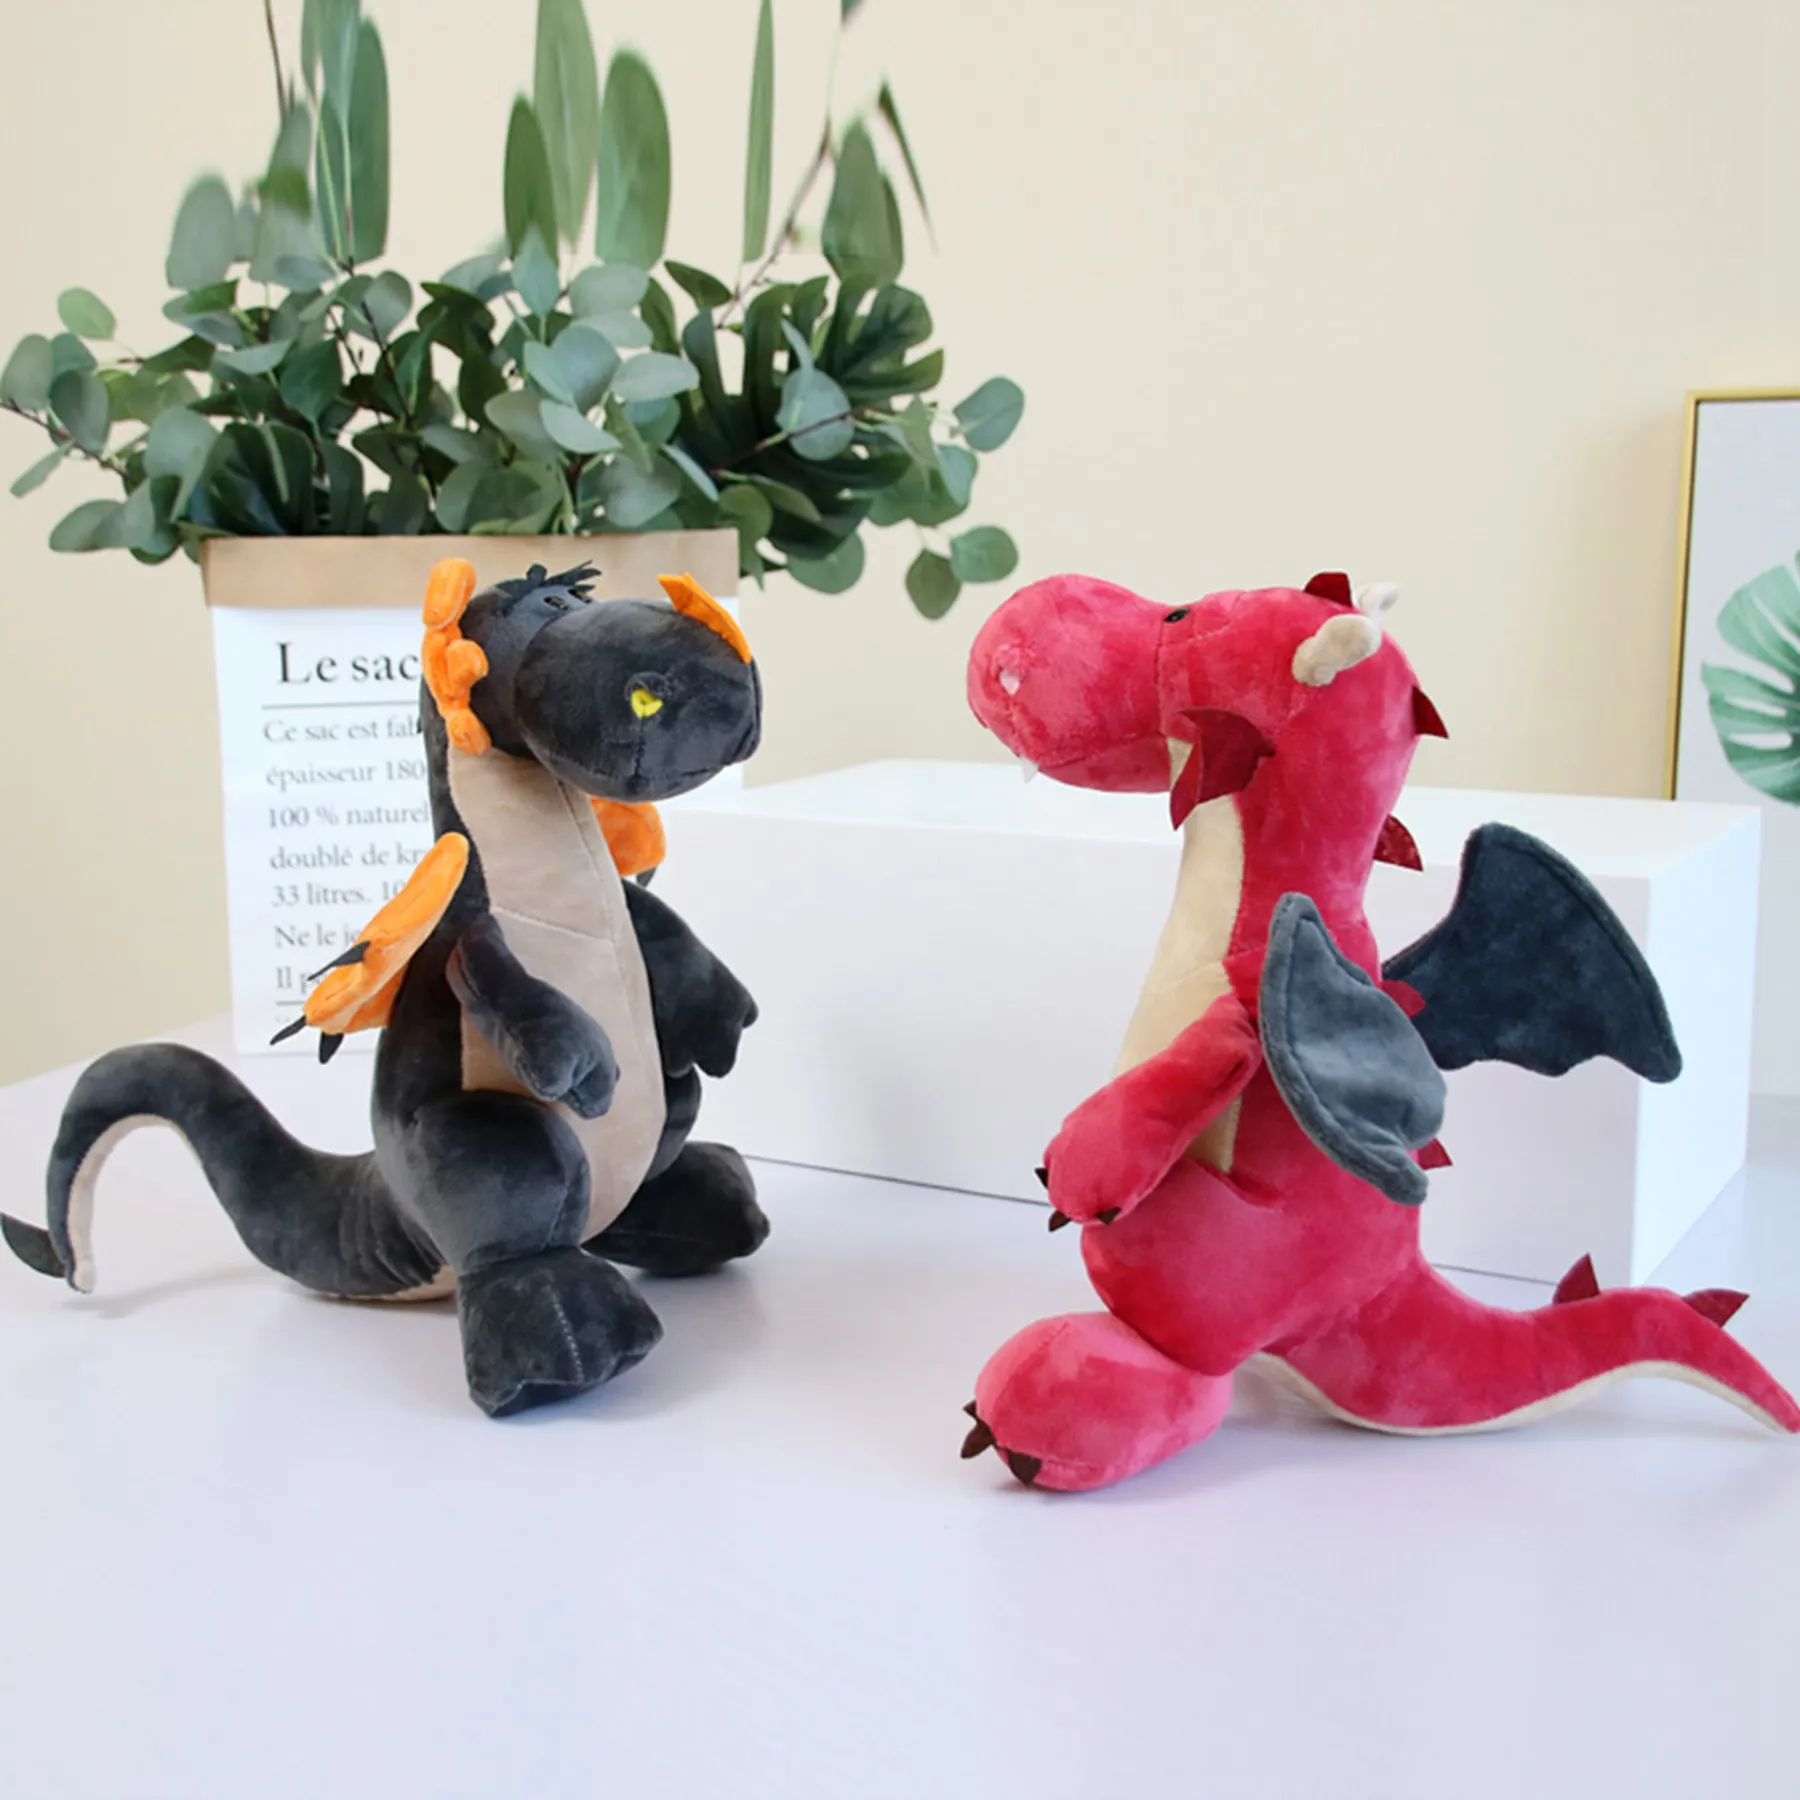 30 см Тиранозавр Рекс, динозавры плюшевые игрушки мягкие игрушки/животные мультфильм дракон для детей мальчиков подарок на день рождения Рождество